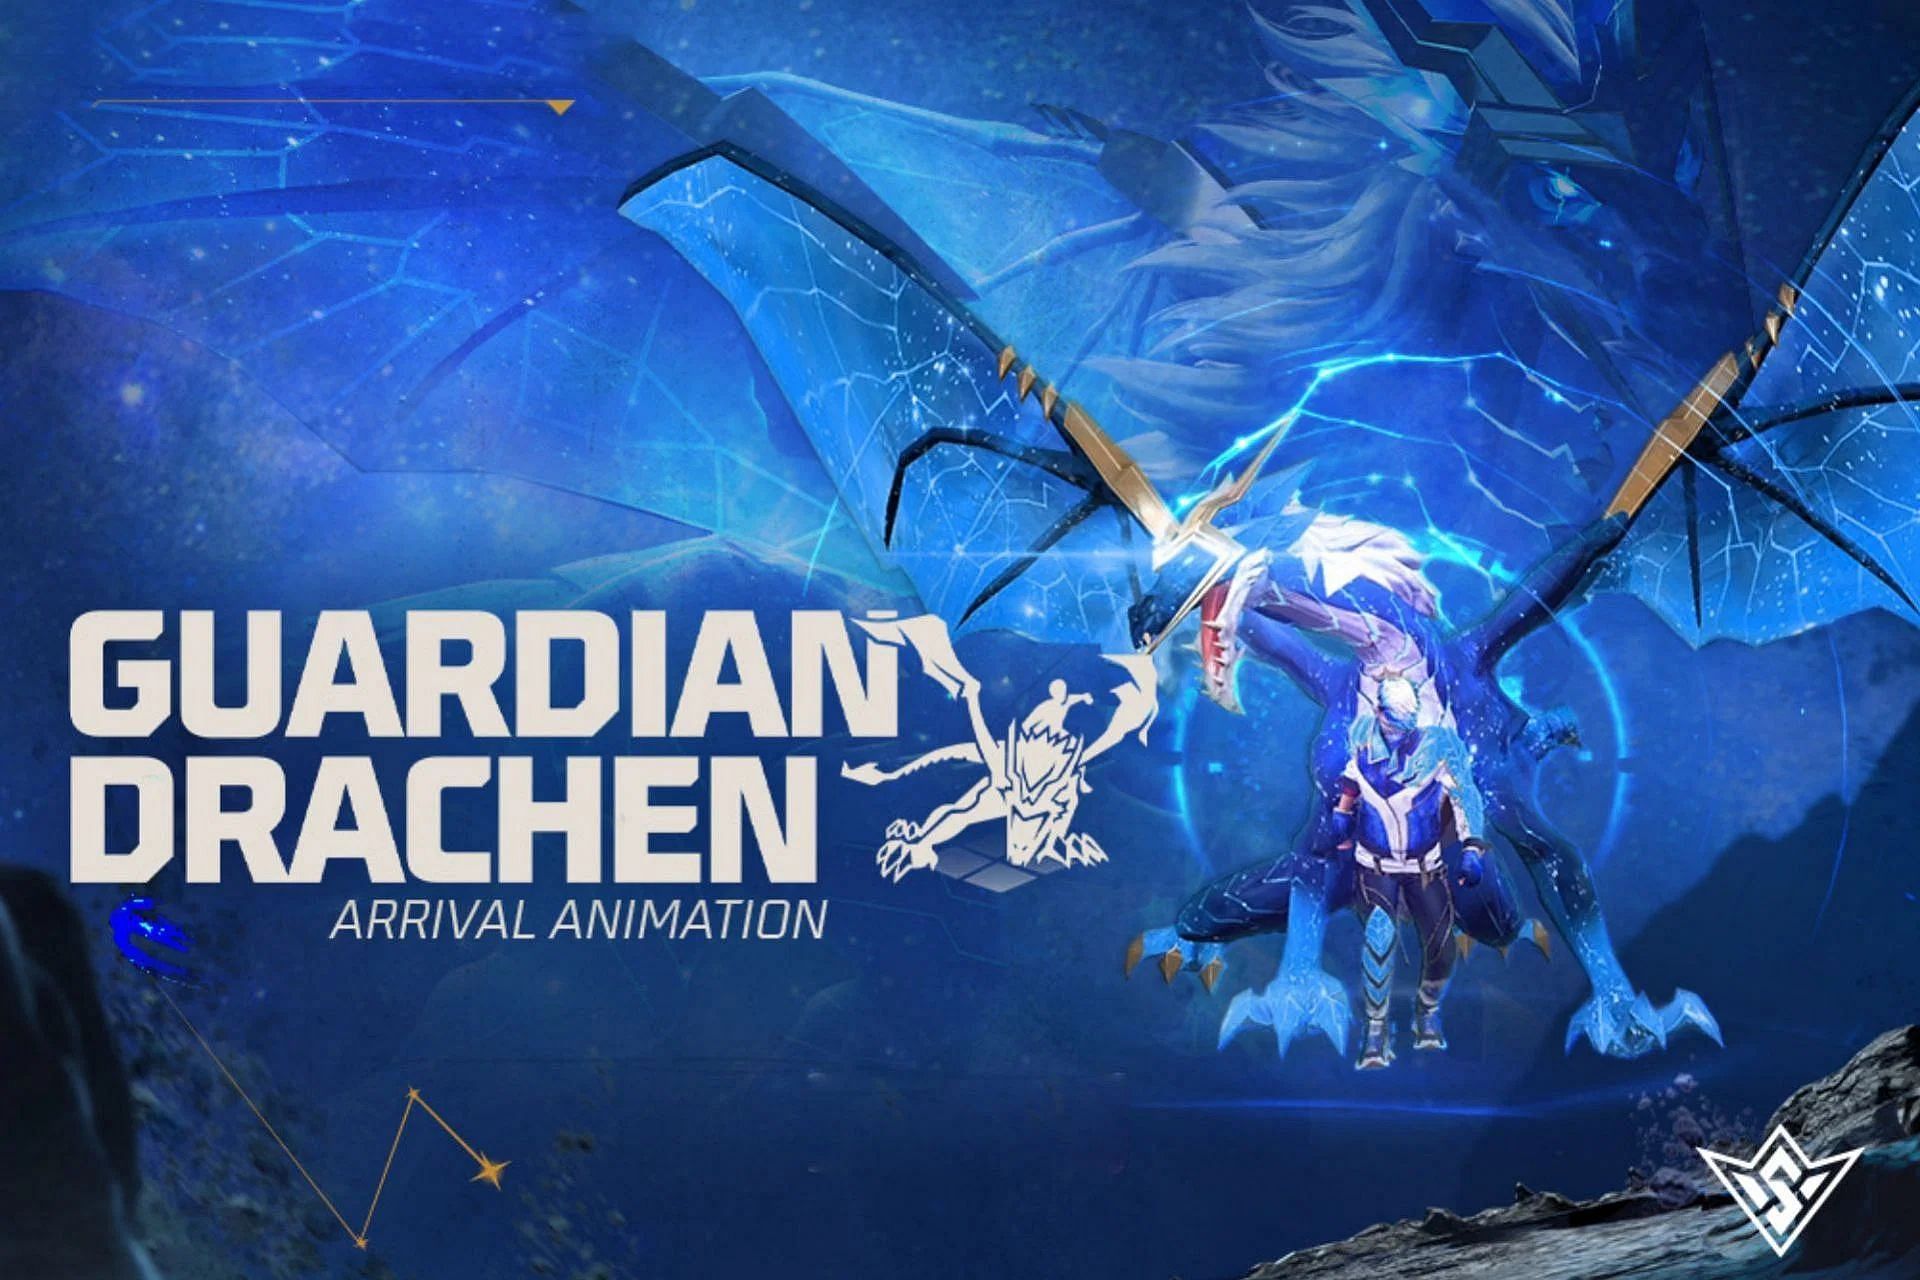 Guardian Drachen arrival एनीमेशन (Image via Garena)